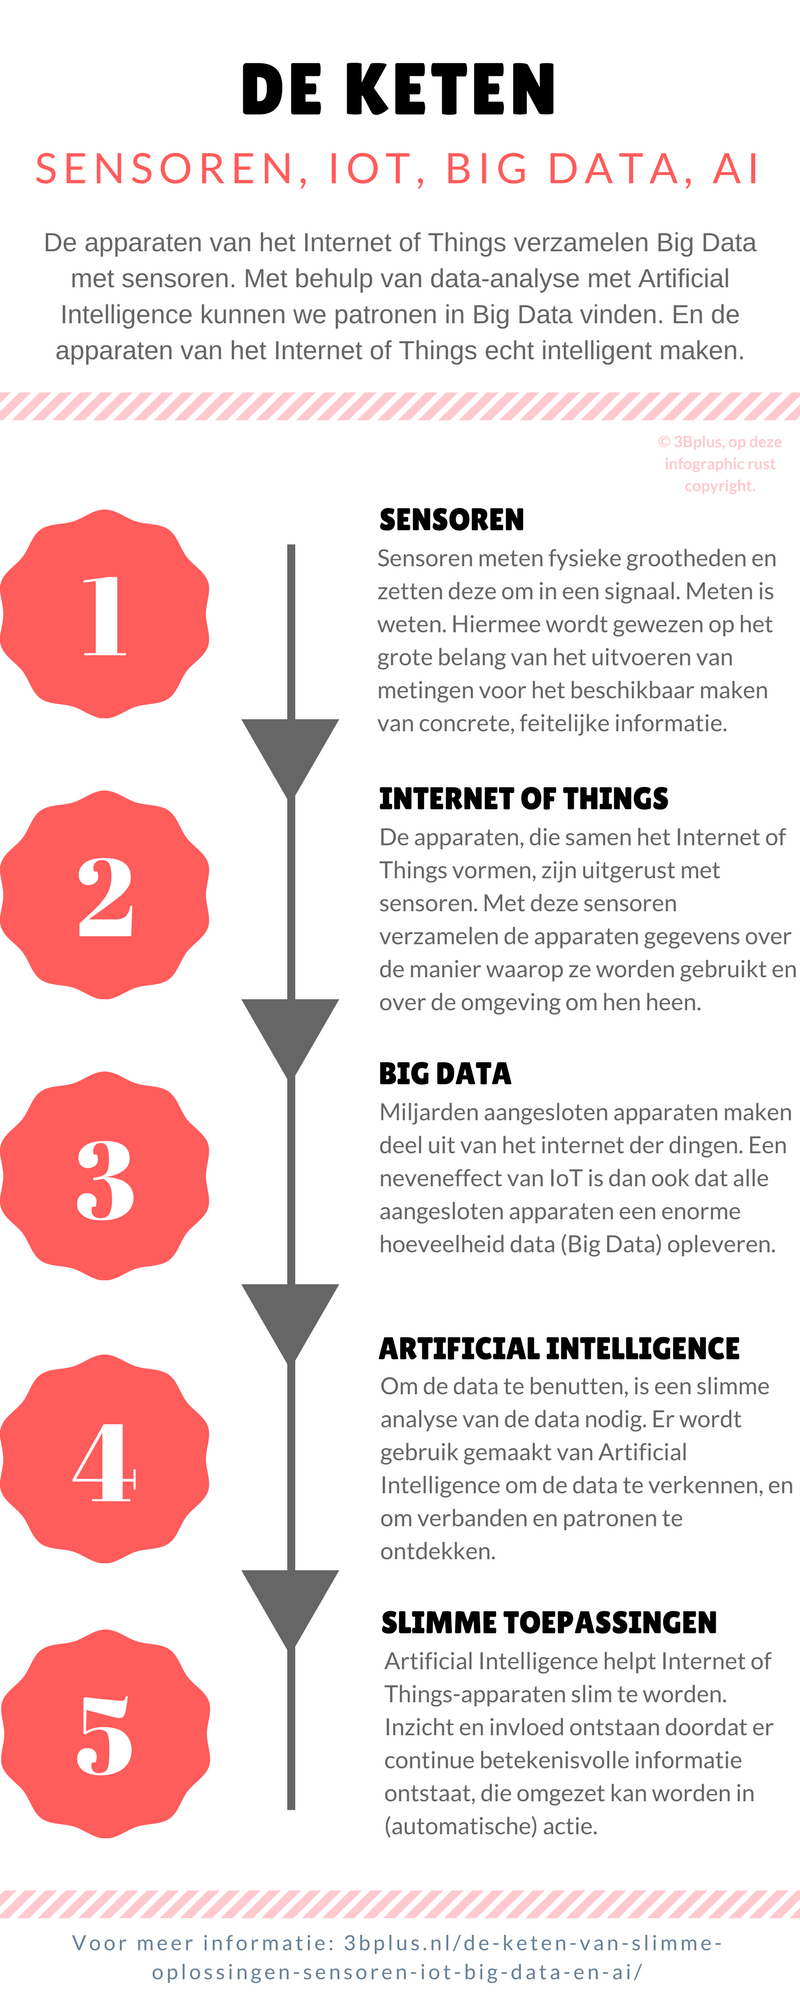 Met deze infographic willen we de keten tussen sensoren, Internet of Things (IoT), Big Data en Artificial Intelligence (AI) illustreren. Tezamen vormen deze technologieën namelijk de keten naar slimme oplossingen.